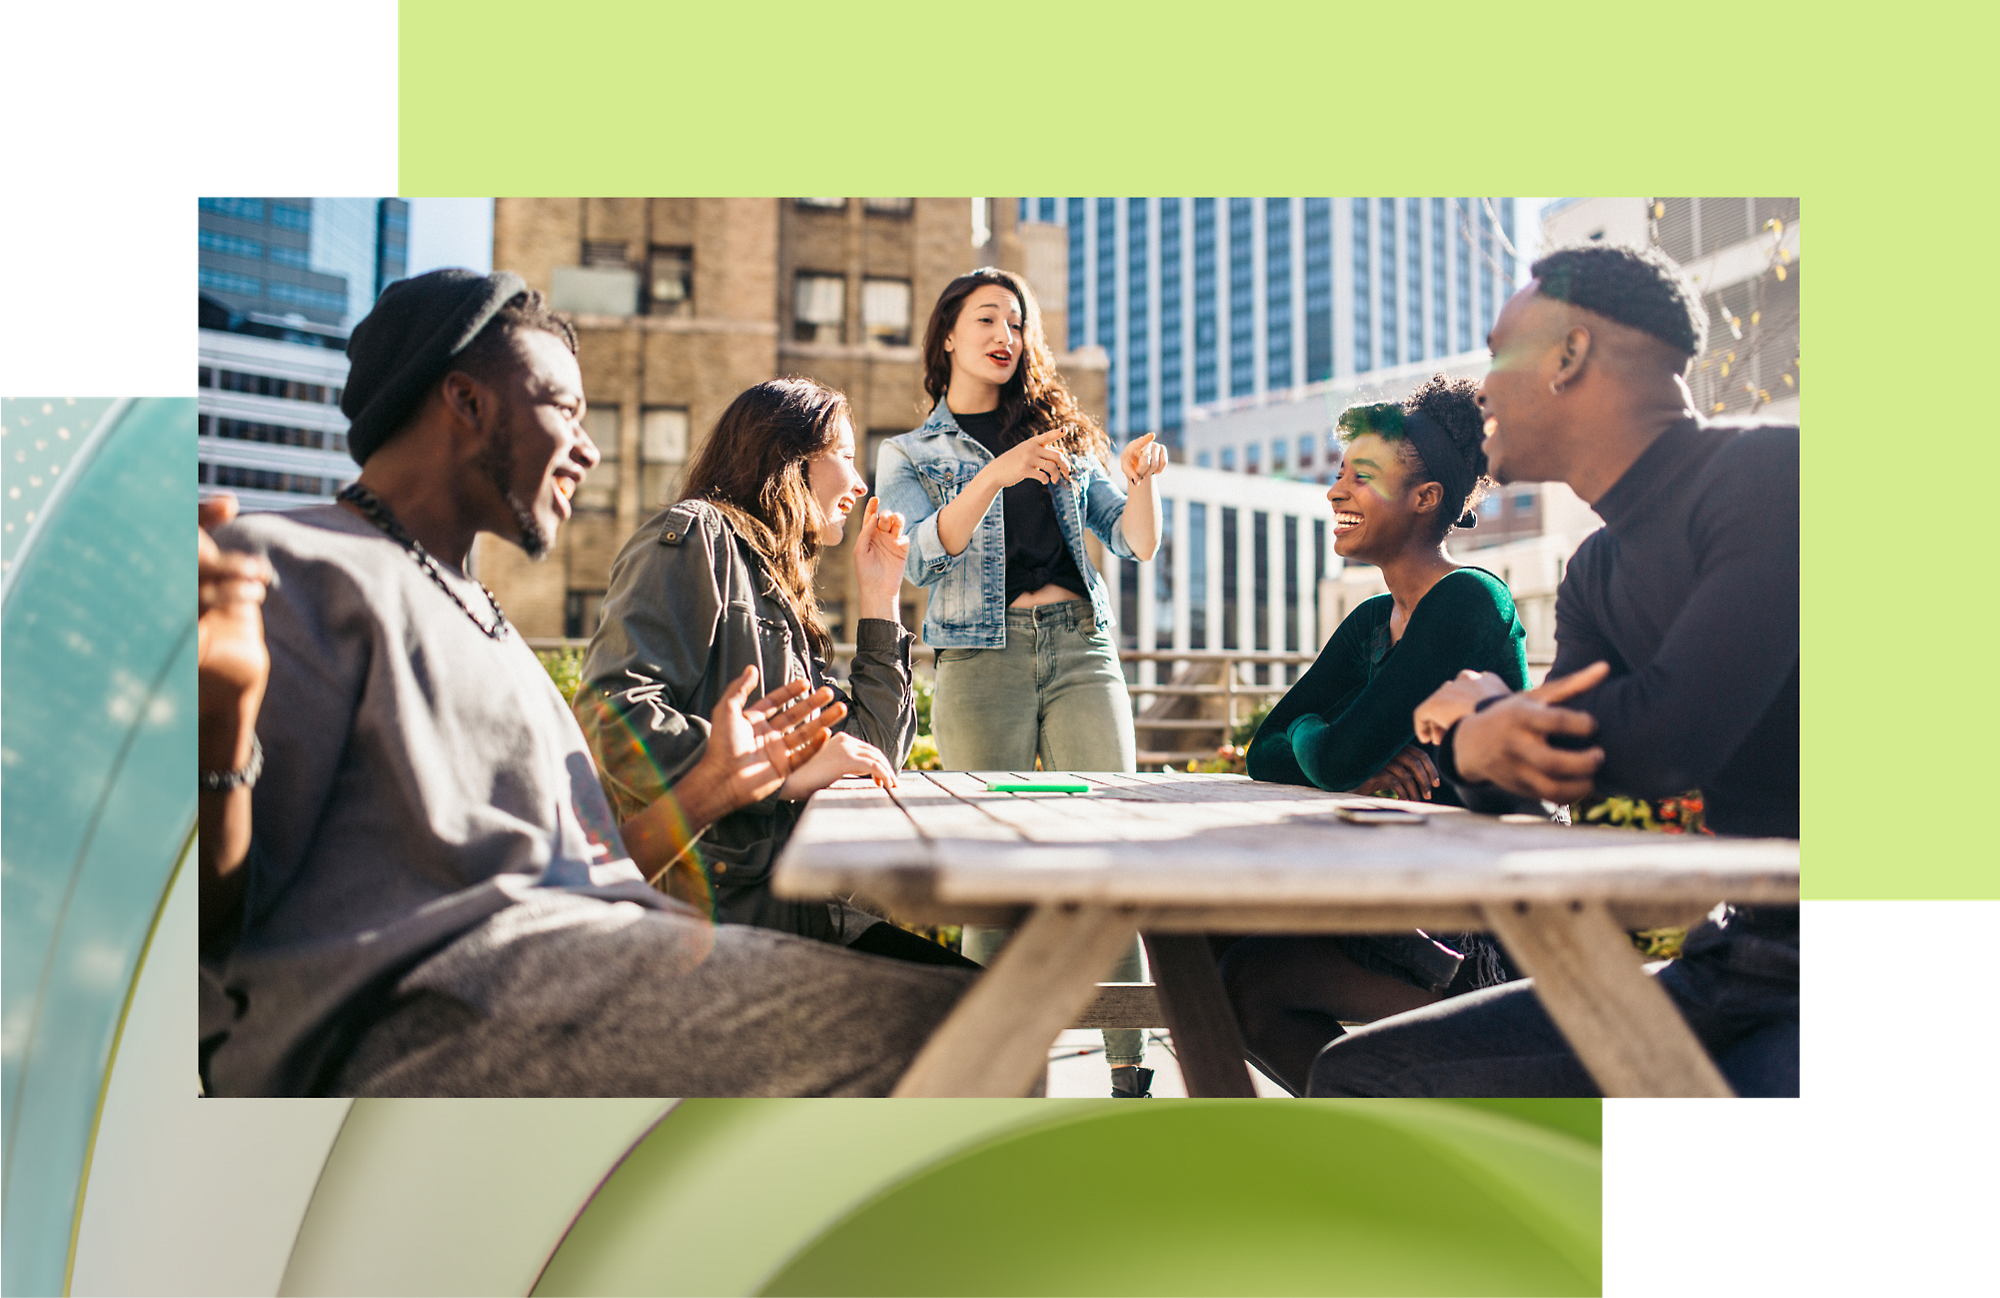 Un grupo diverso de adultos jóvenes disfrutan de una dinámica discusión en torno a una mesa al aire libre en un entorno urbano y soleado.